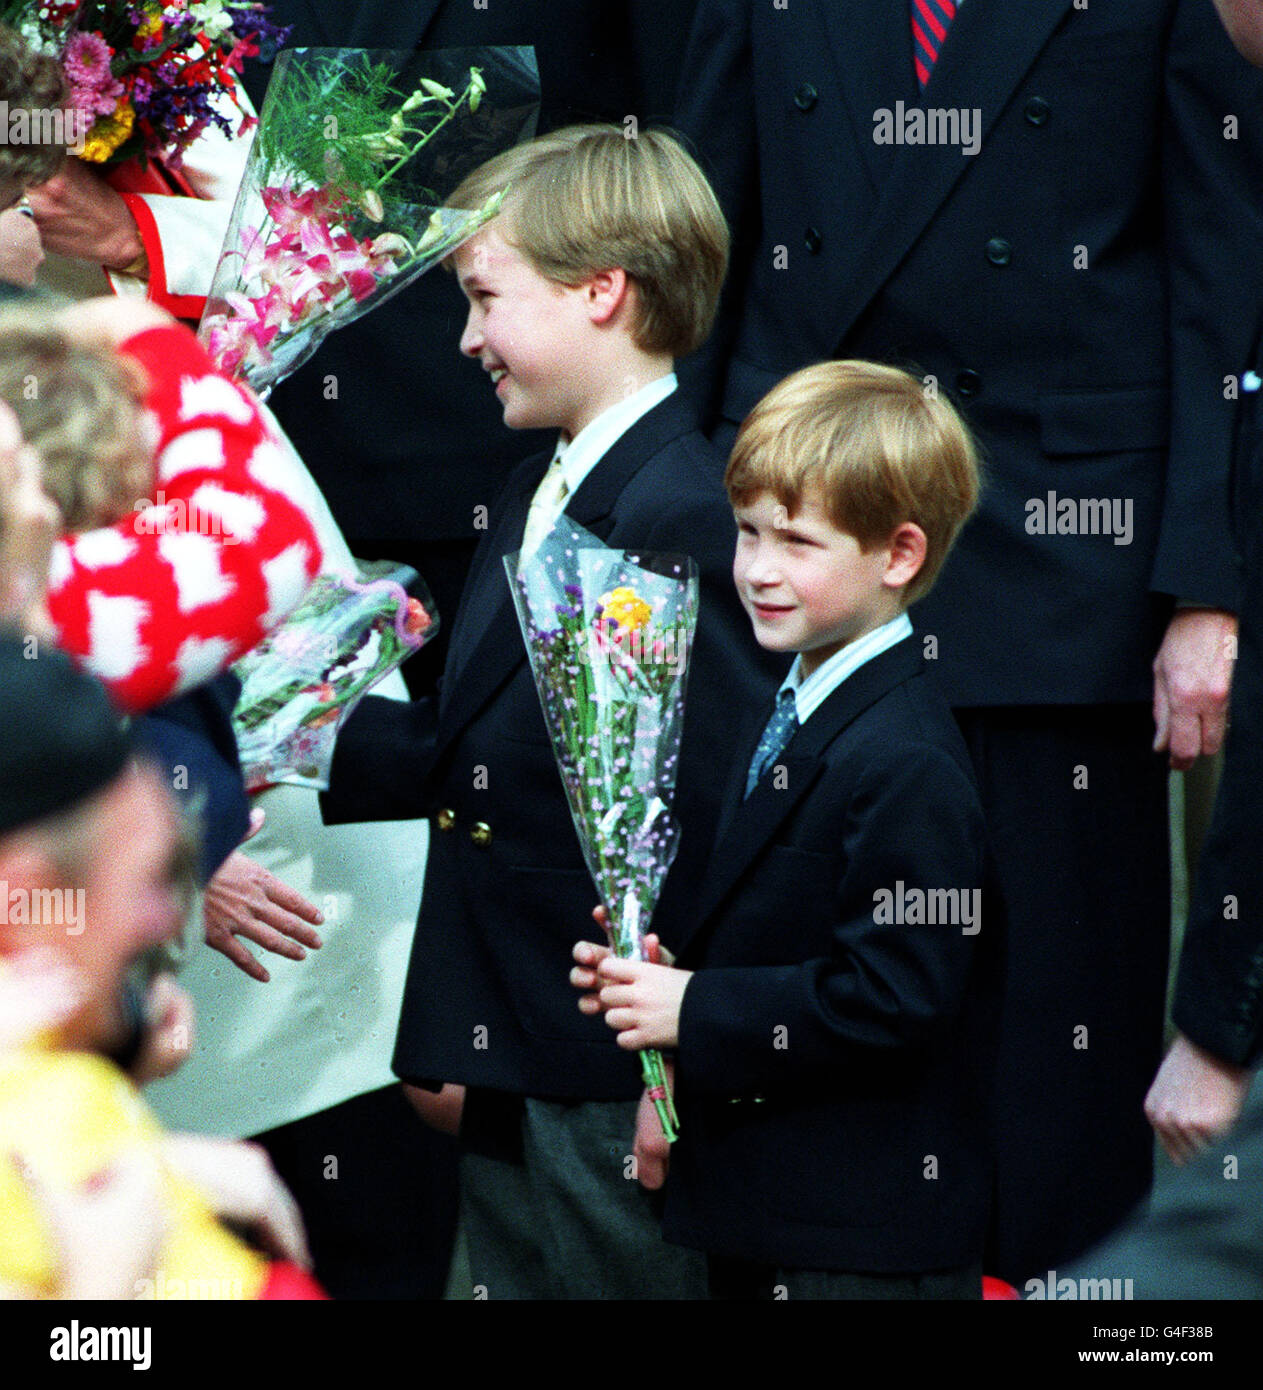 Le prince William (à gauche), âgé de 9 ans, et le prince Harry, âgé de 7 ans, font une promenade informelle après avoir assisté au service du dimanche matin avec leurs parents, le prince et la princesse de Galles, à la cathédrale Saint-James, à Toronto, au Canada. La famille a ensuite quitté Toronto à bord du yacht royal. Banque D'Images